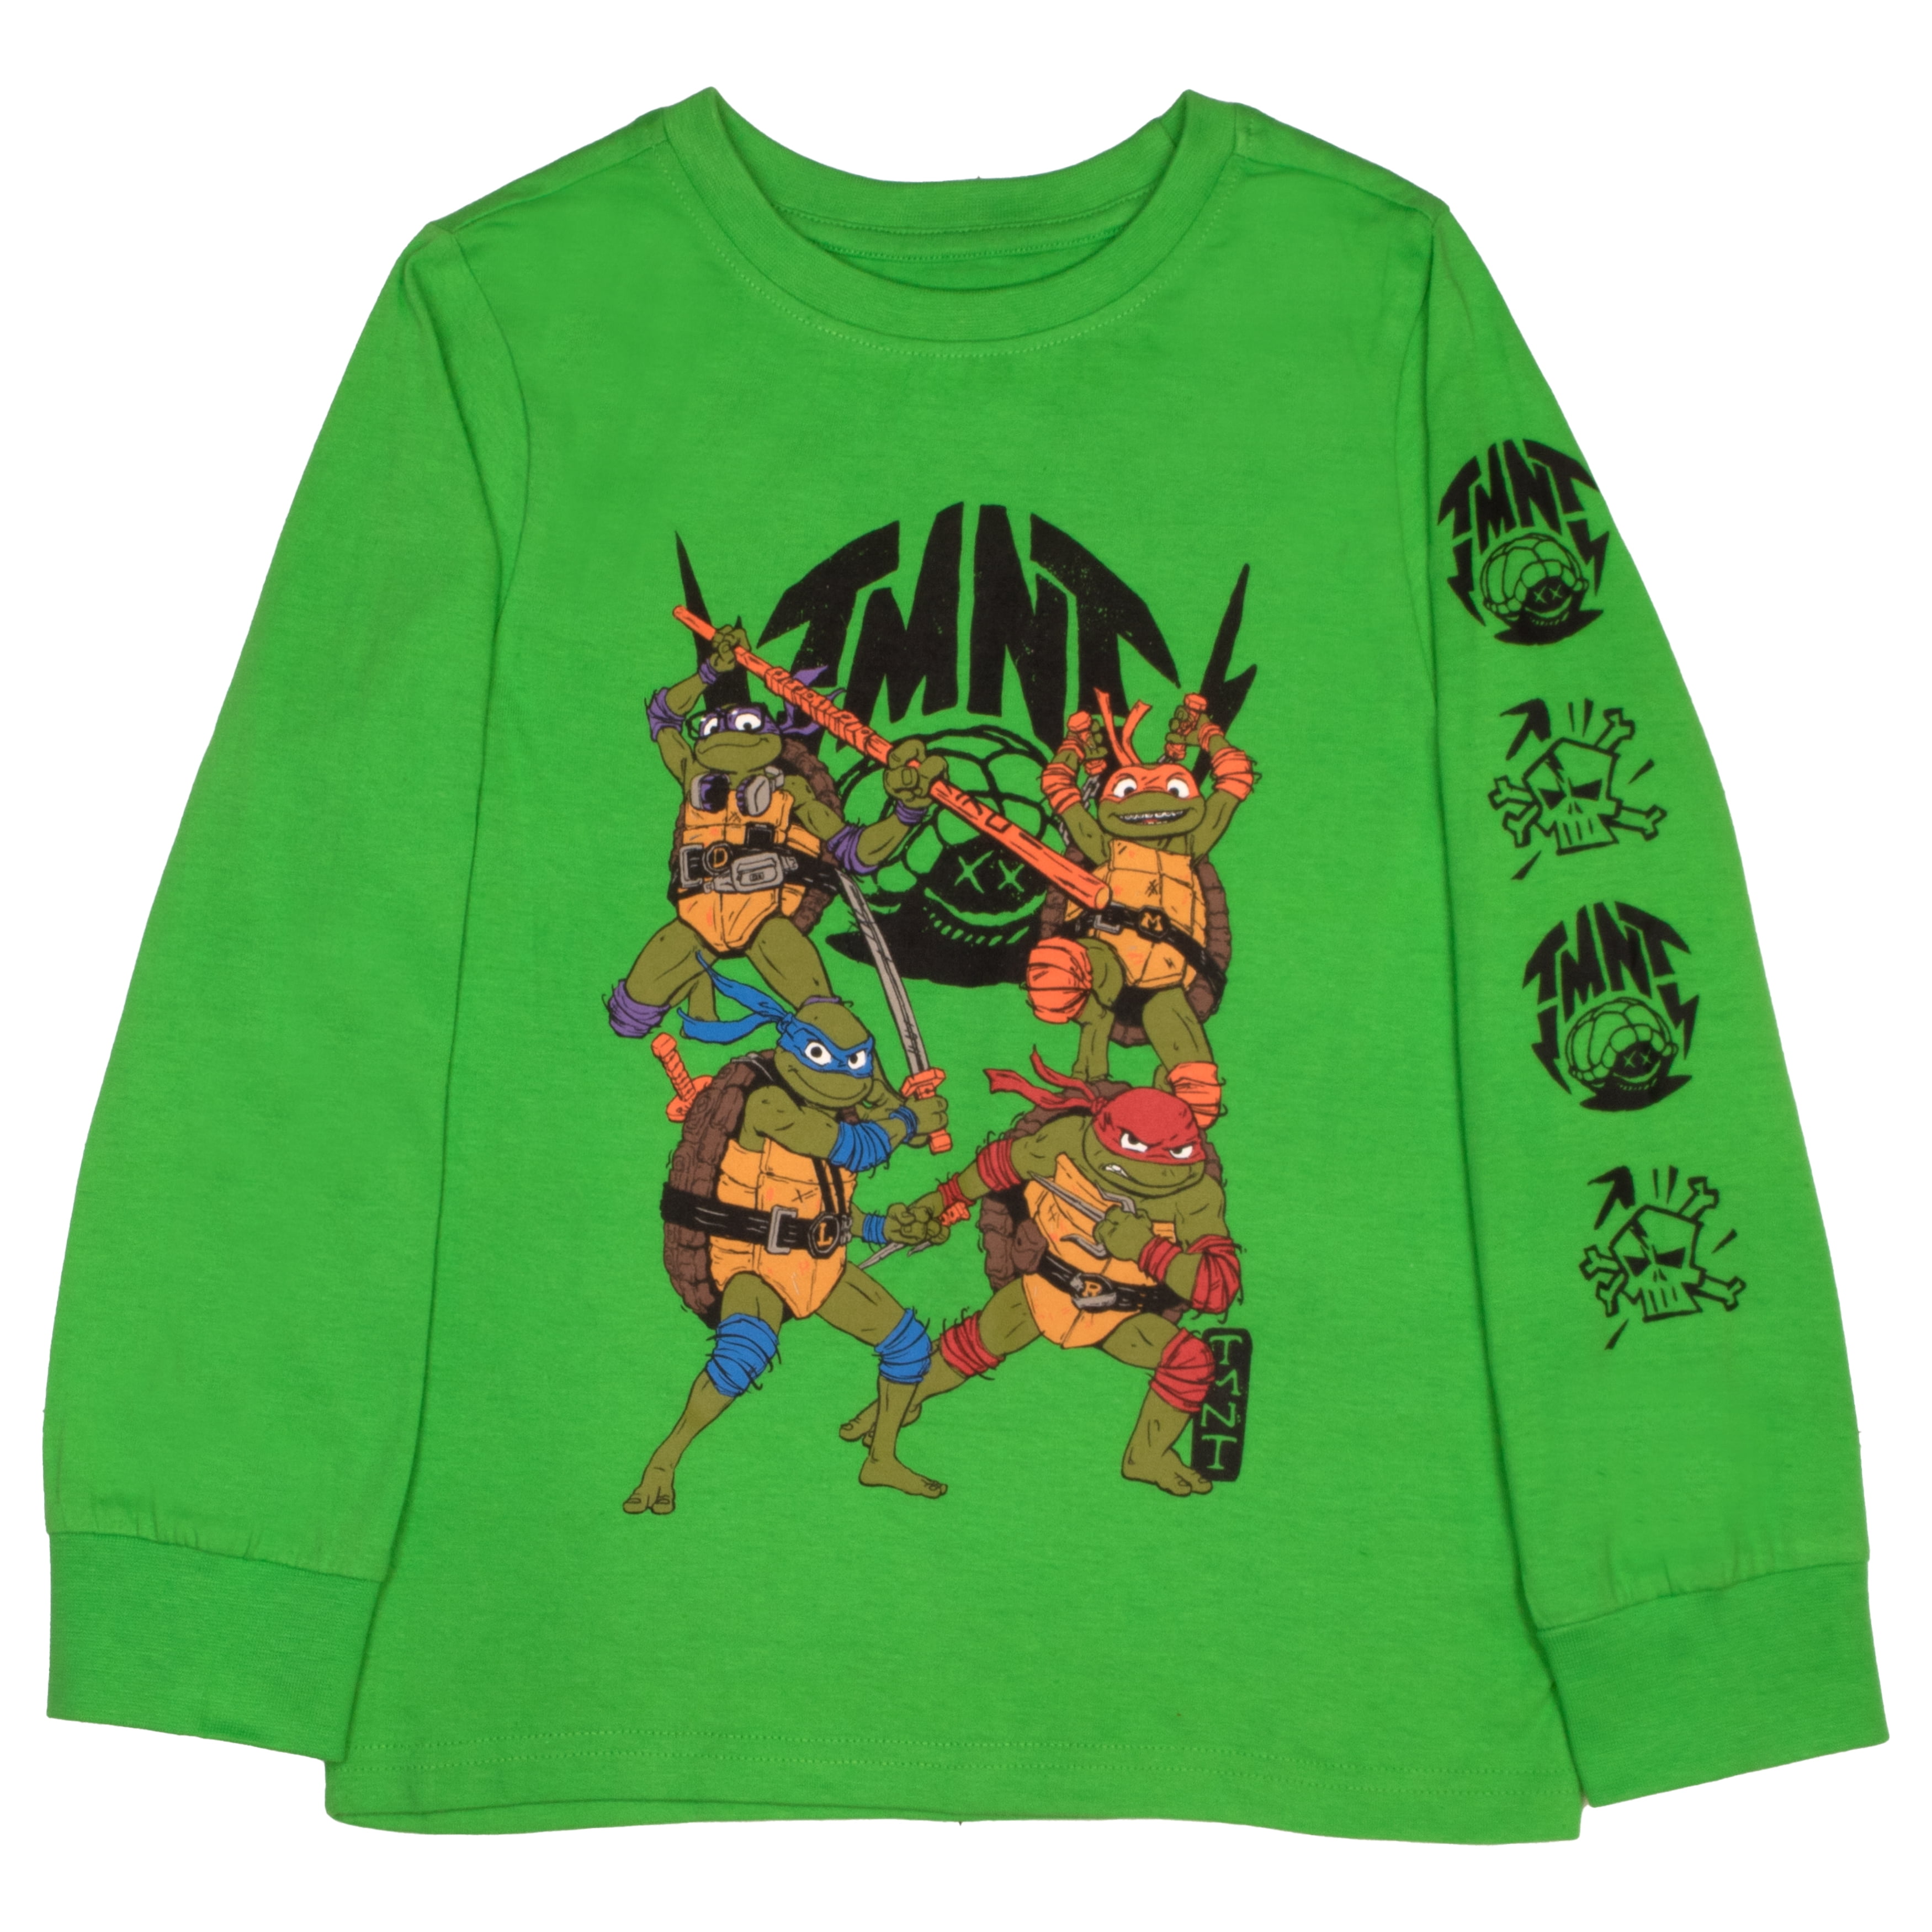 Teenage Mutant Ninja Turtles T-Shirt 2 Pack Kids Grey Black Top